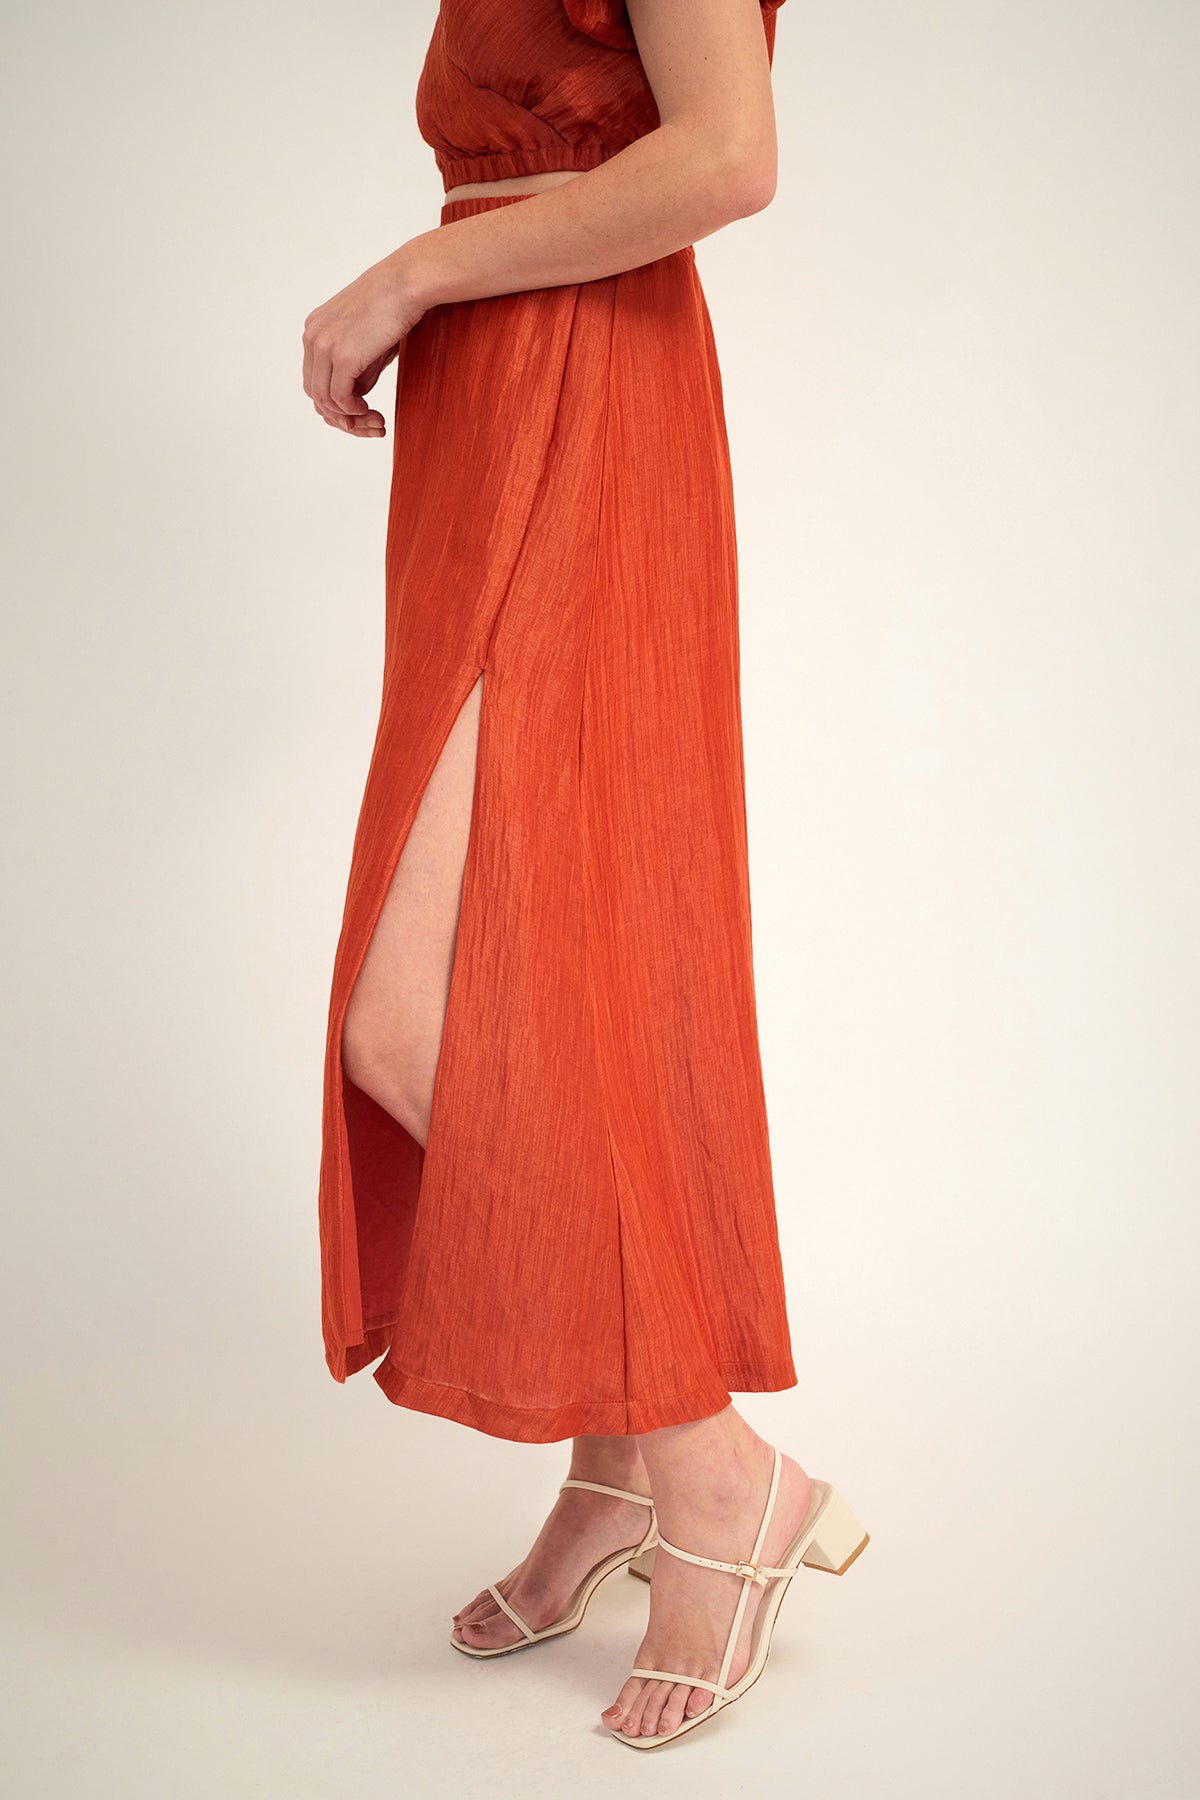 GINIA Silk Linen Carmen Midi Skirt in Picante Red